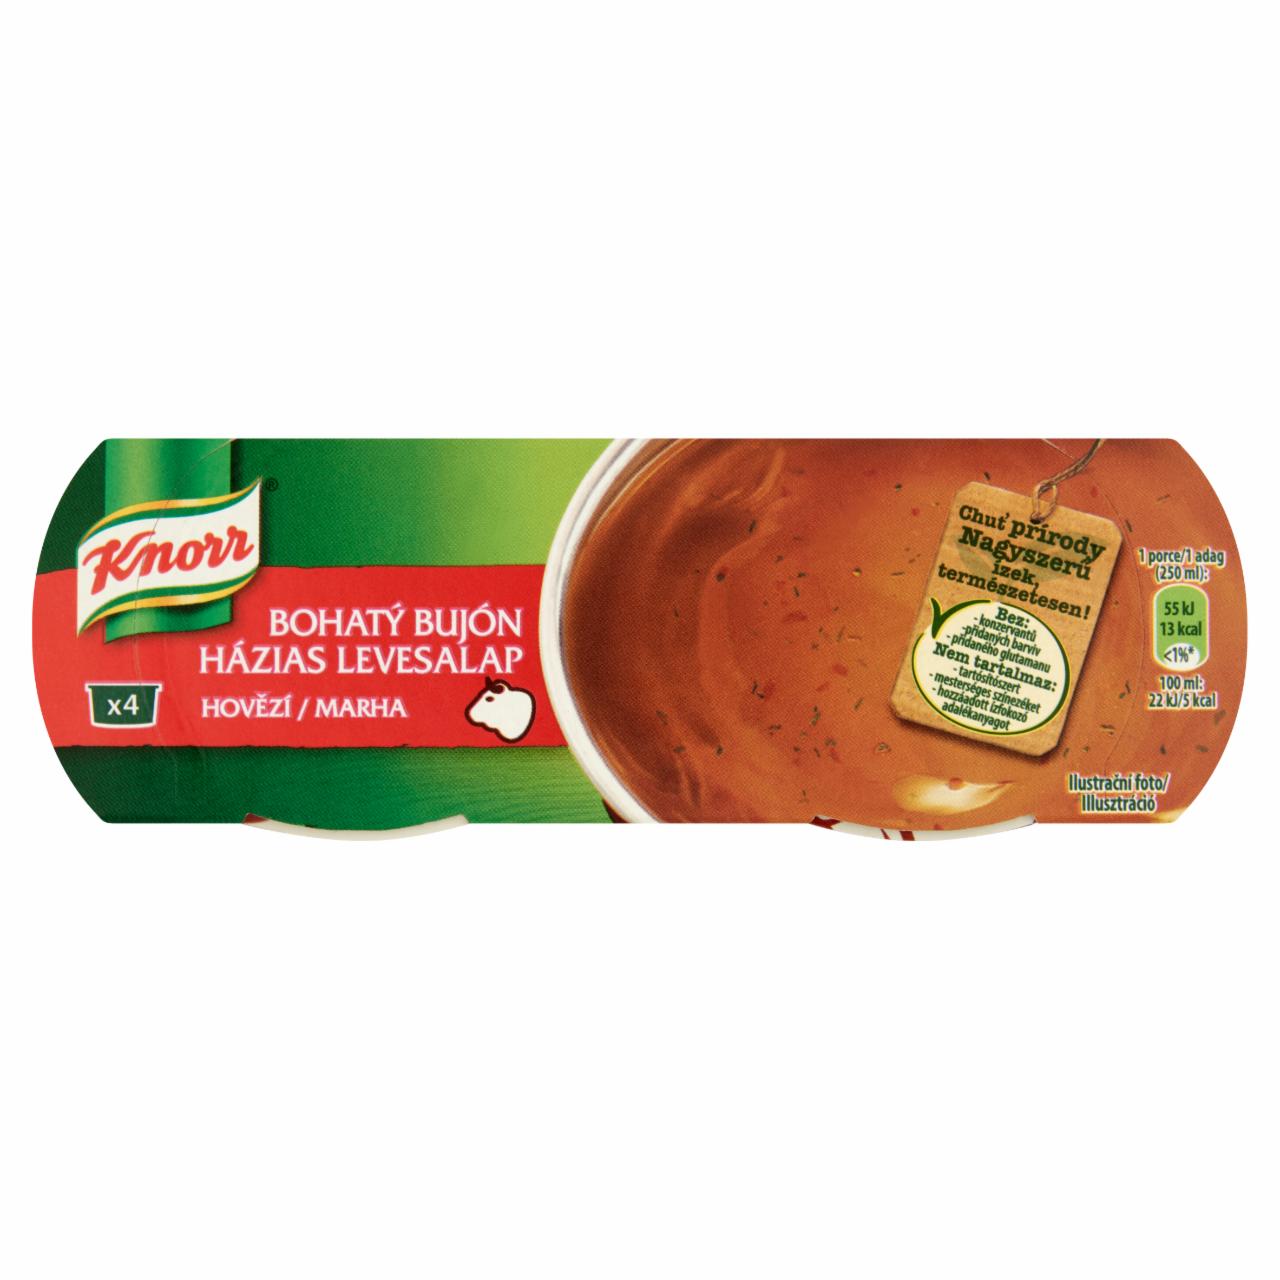 Képek - Knorr házias marha levesalap 112 g